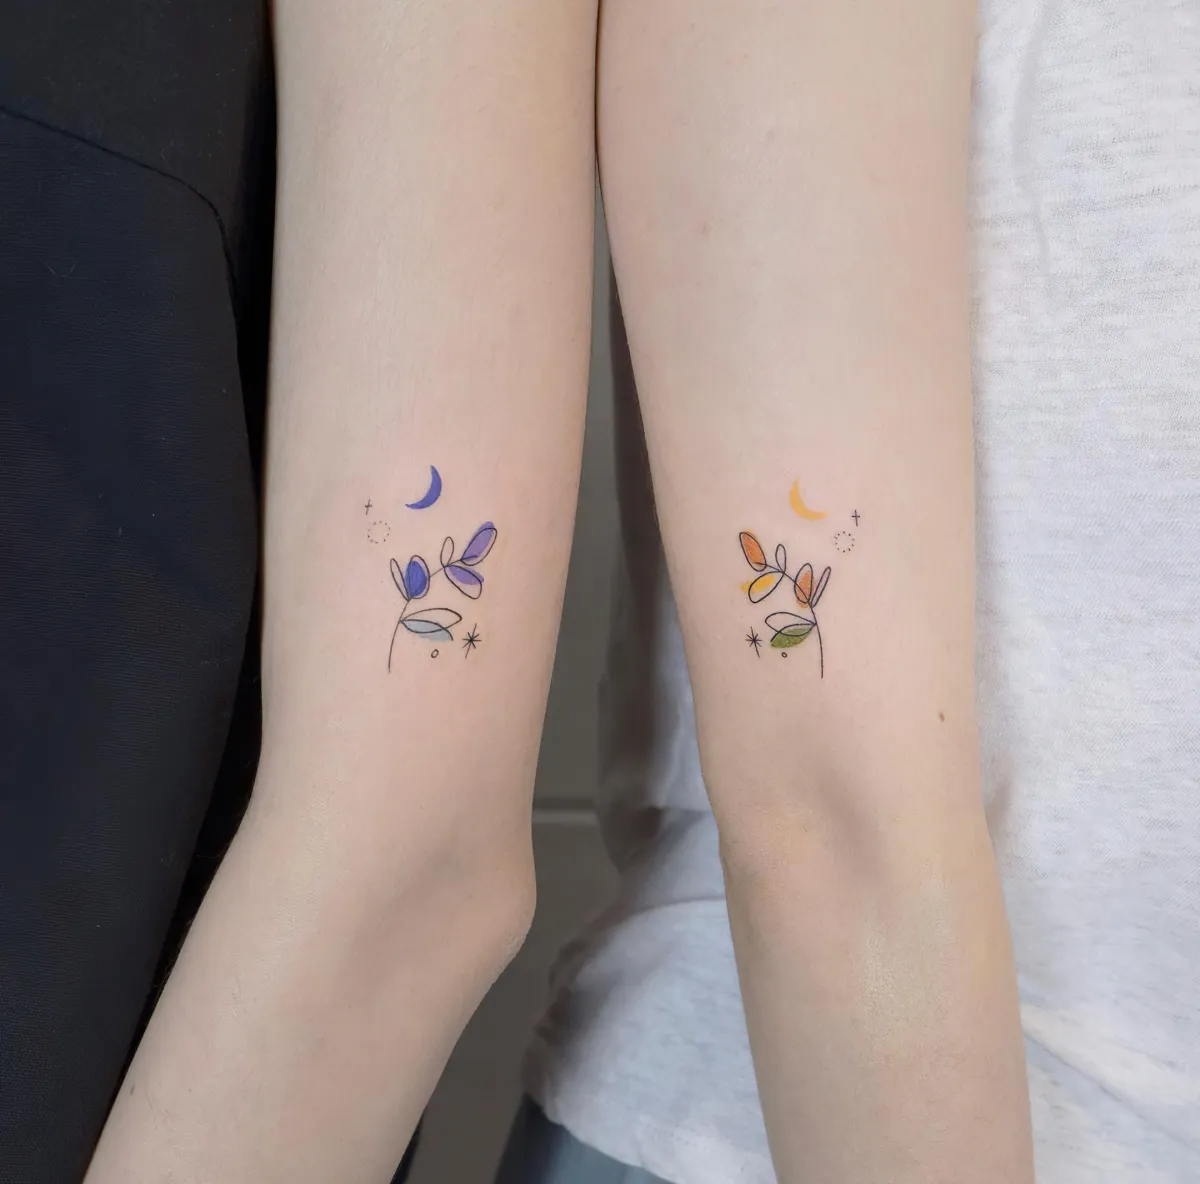 schwestern tattoos ideen farbige blumen mond